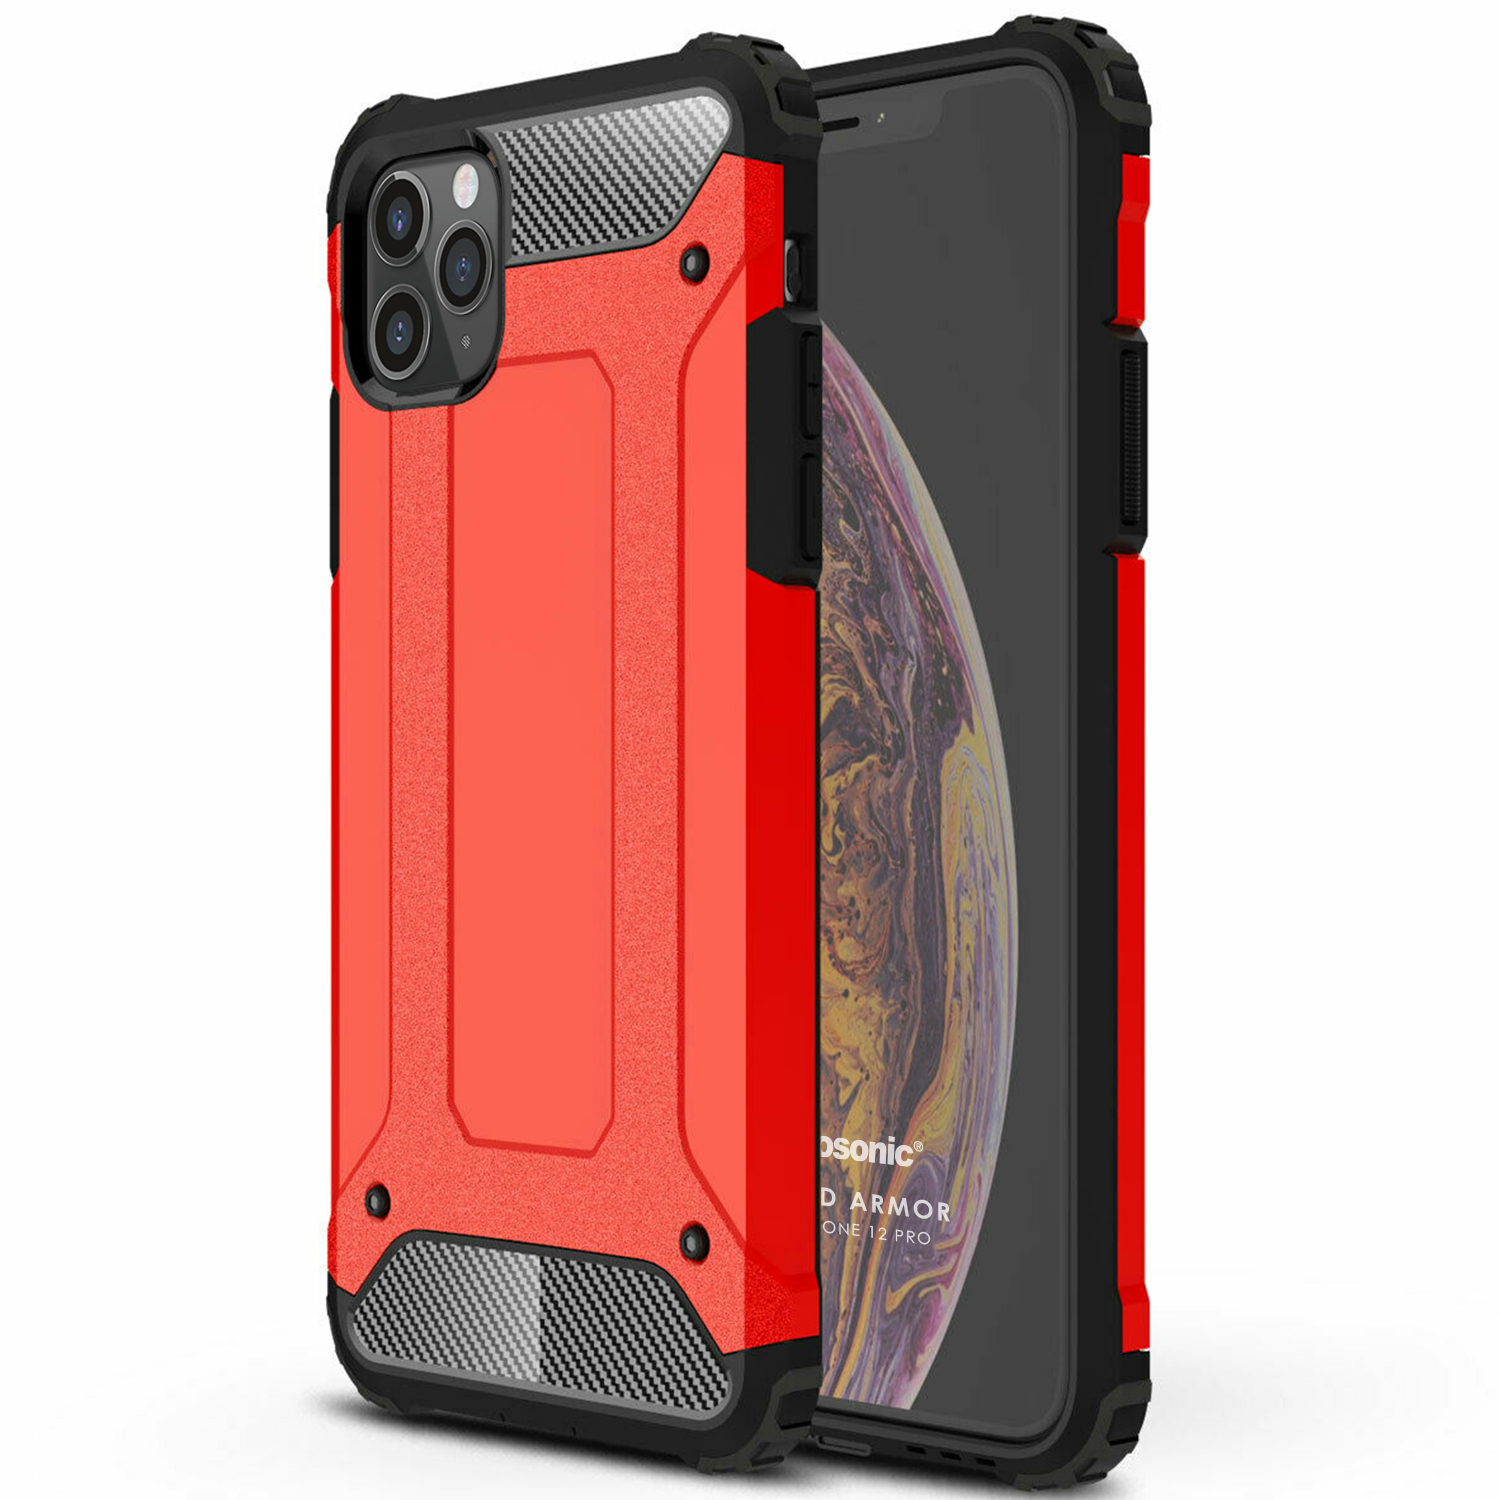 Microsonic Apple iPhone 12 Pro Kılıf Rugged Armor Kırmızı